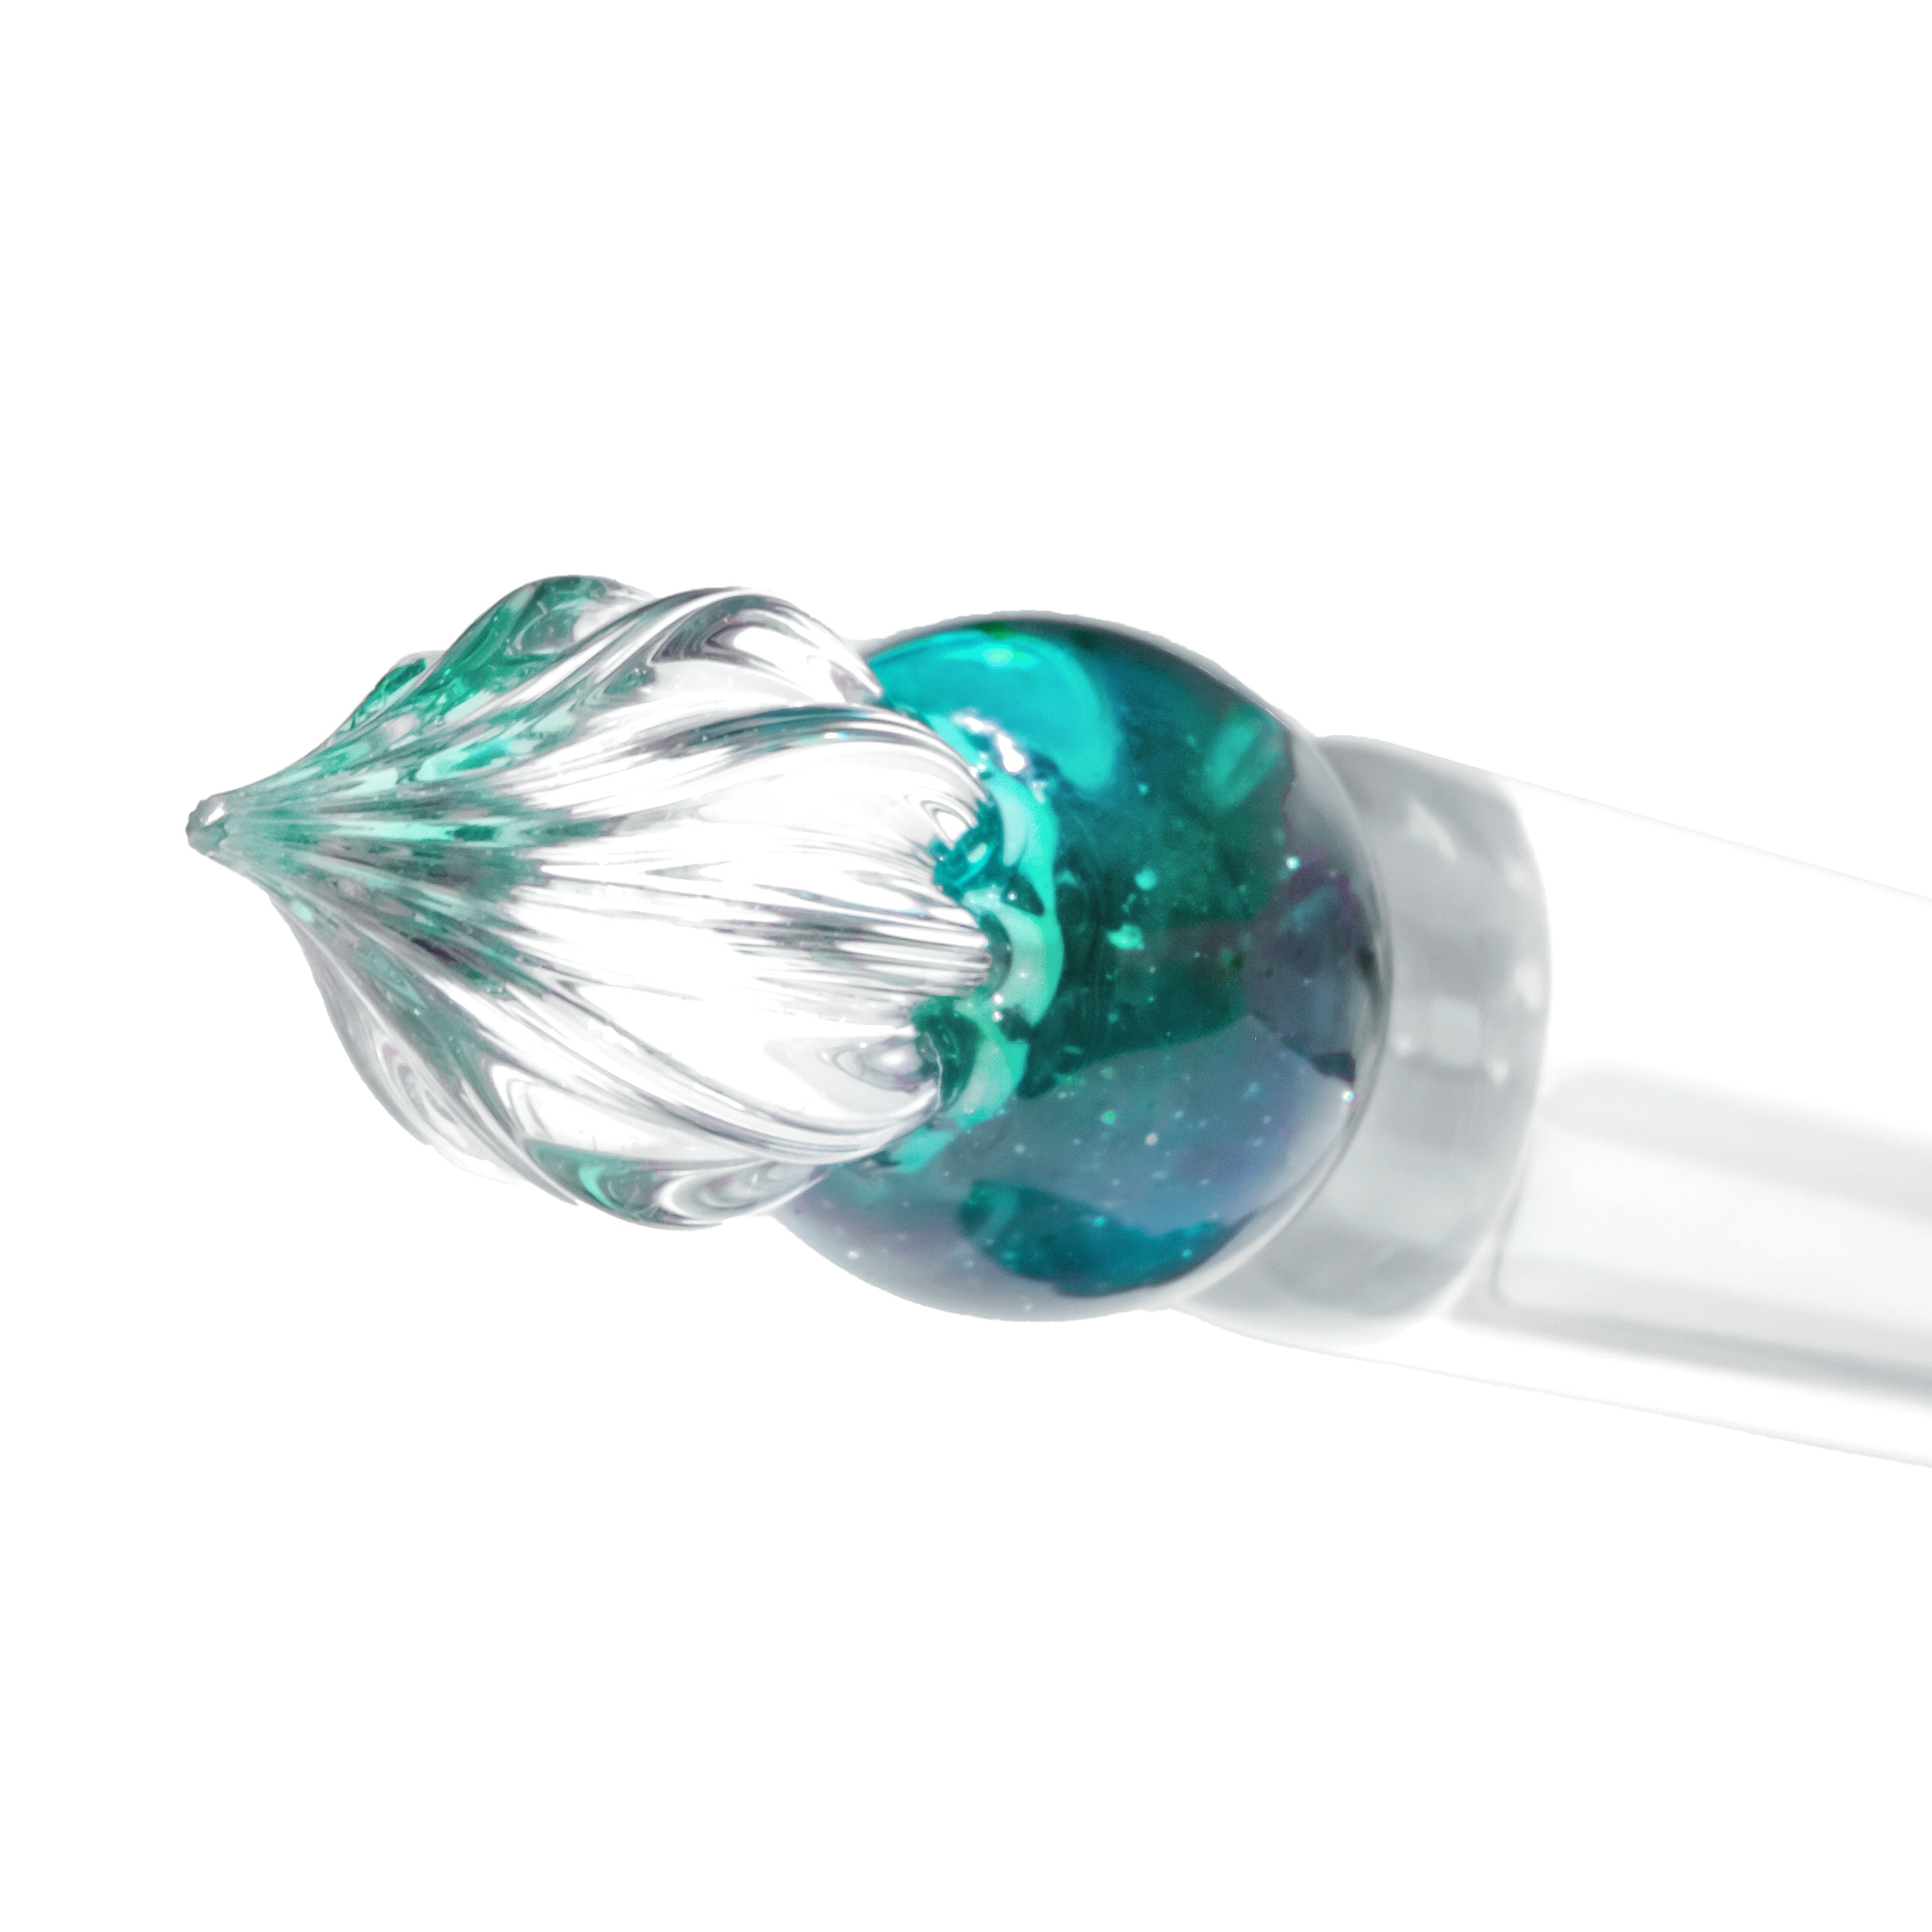 The Gumdrop Glass Dip Pen - Tourmaline